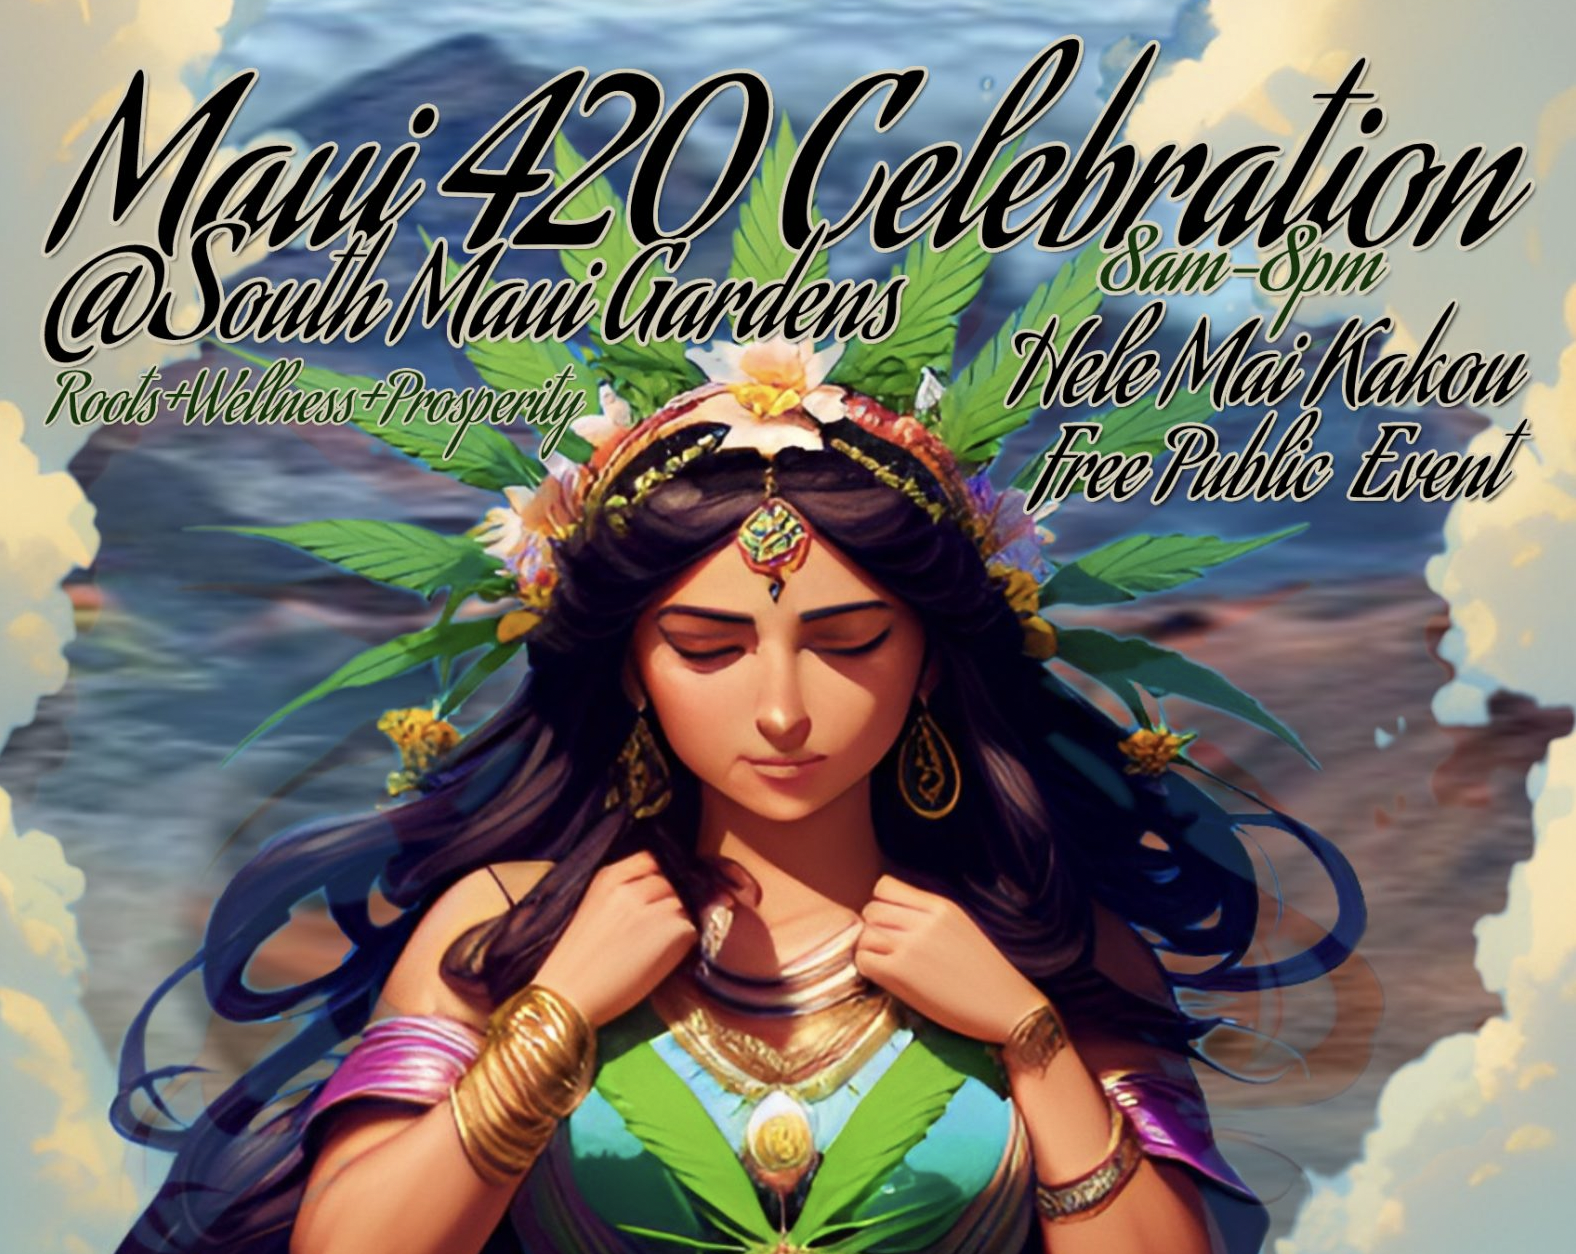 420 Celebration